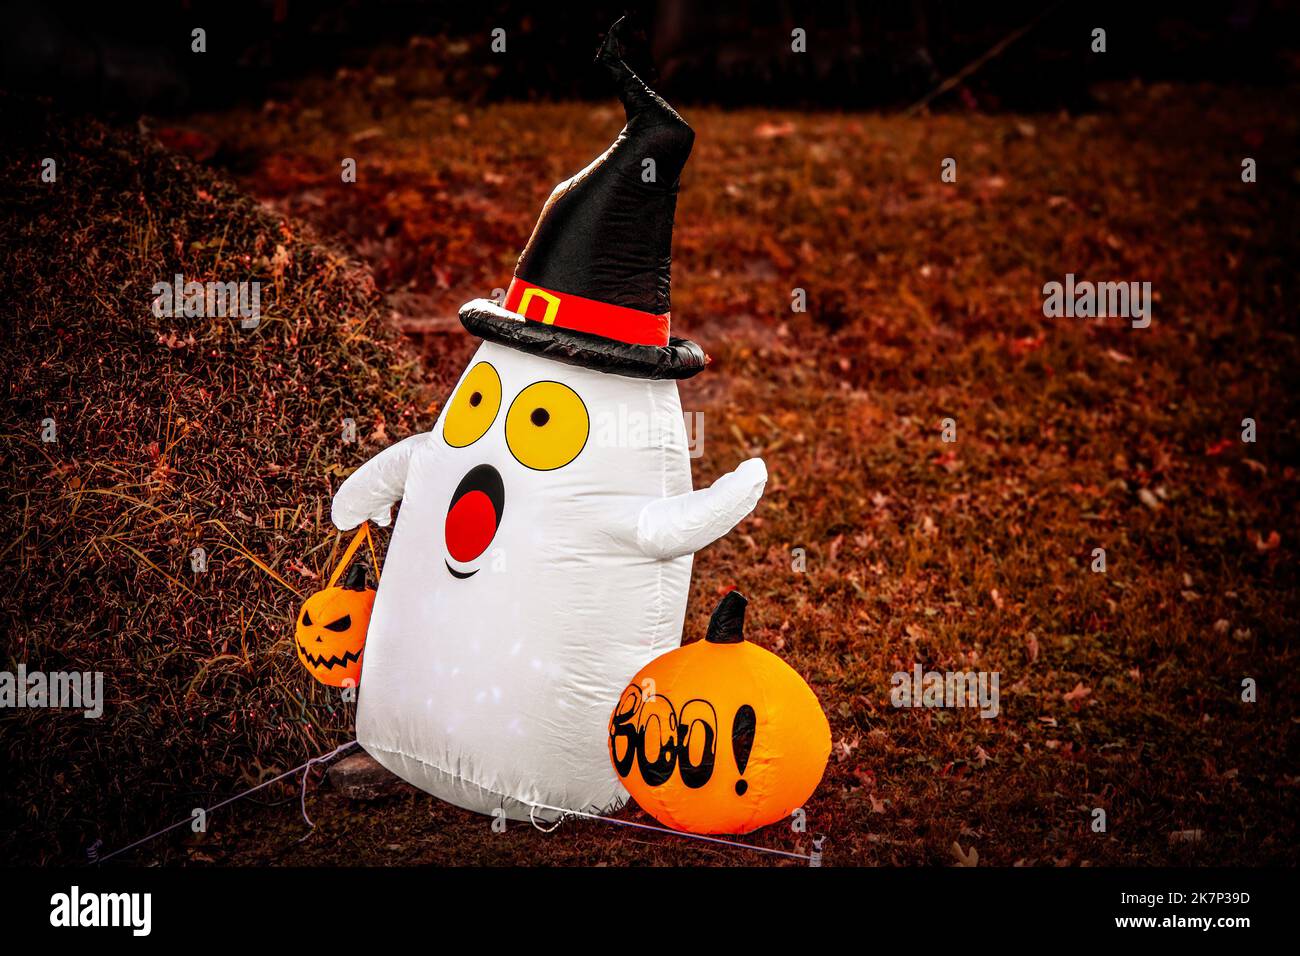 Verängstigter Geist Rasen Schmuck für Halloween - sprengen Geist mit Pilgerhut und Trick or Treat Kürbis Stockfoto